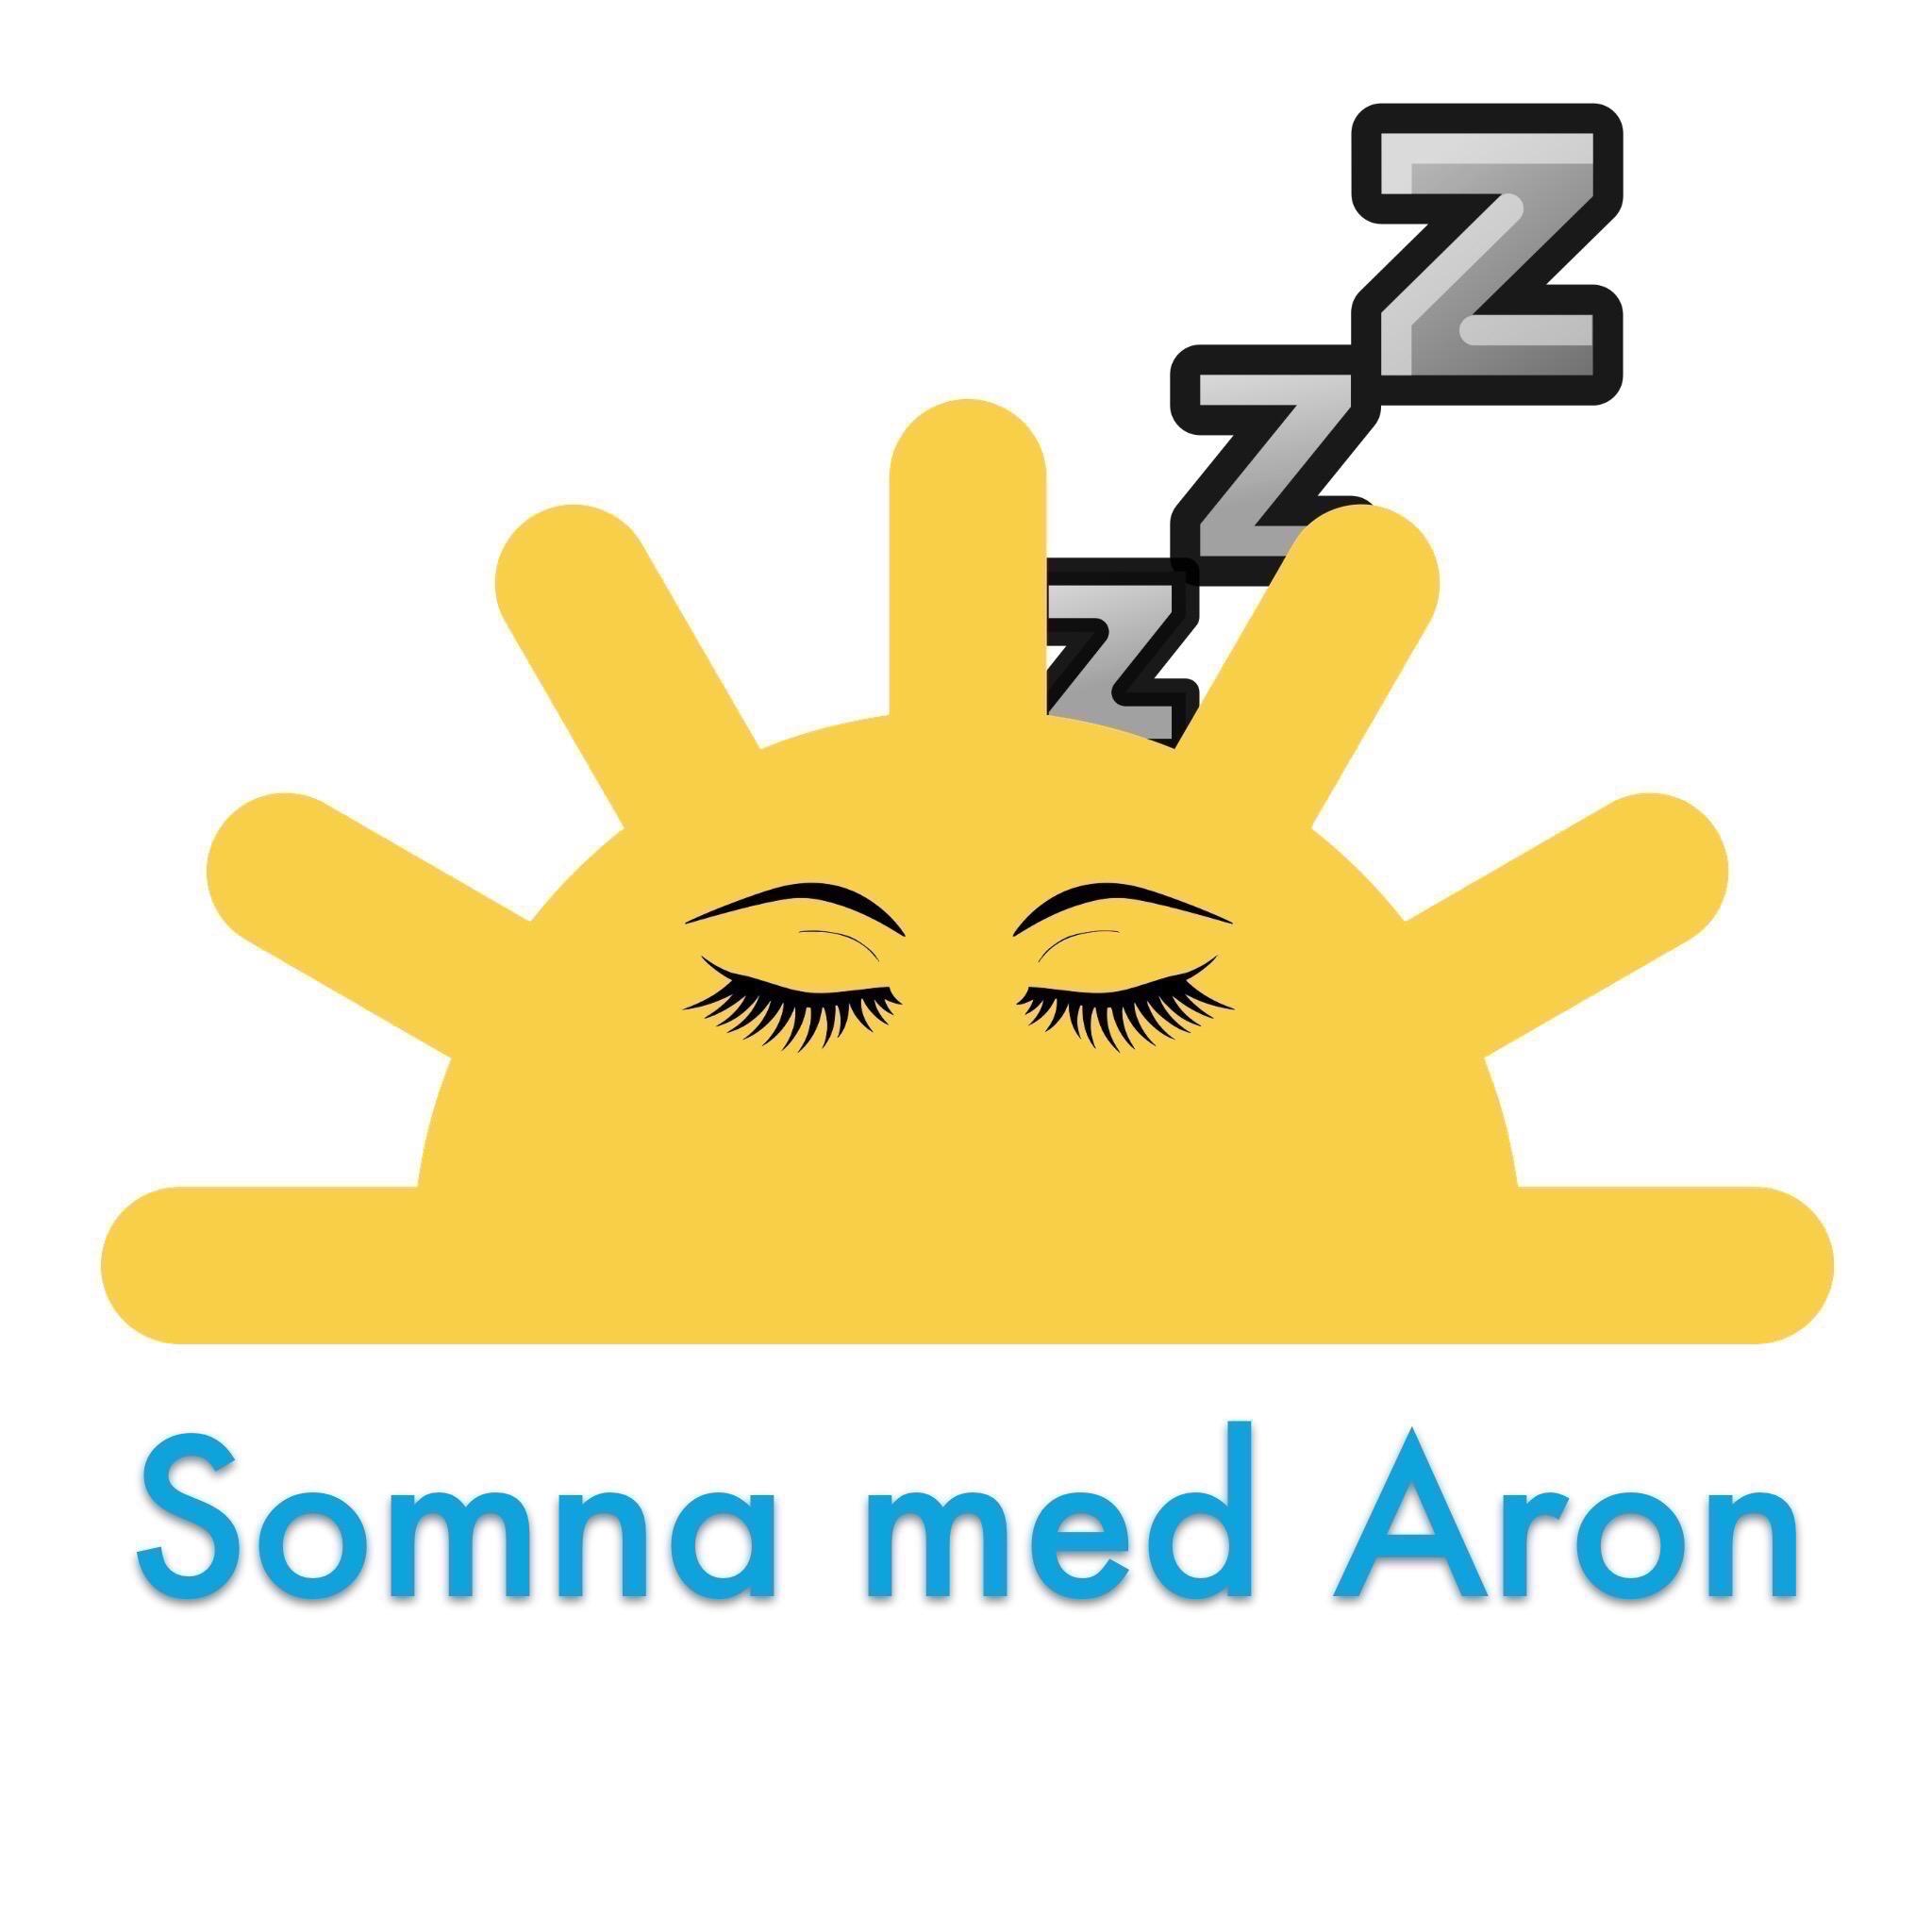 Somna med Aron